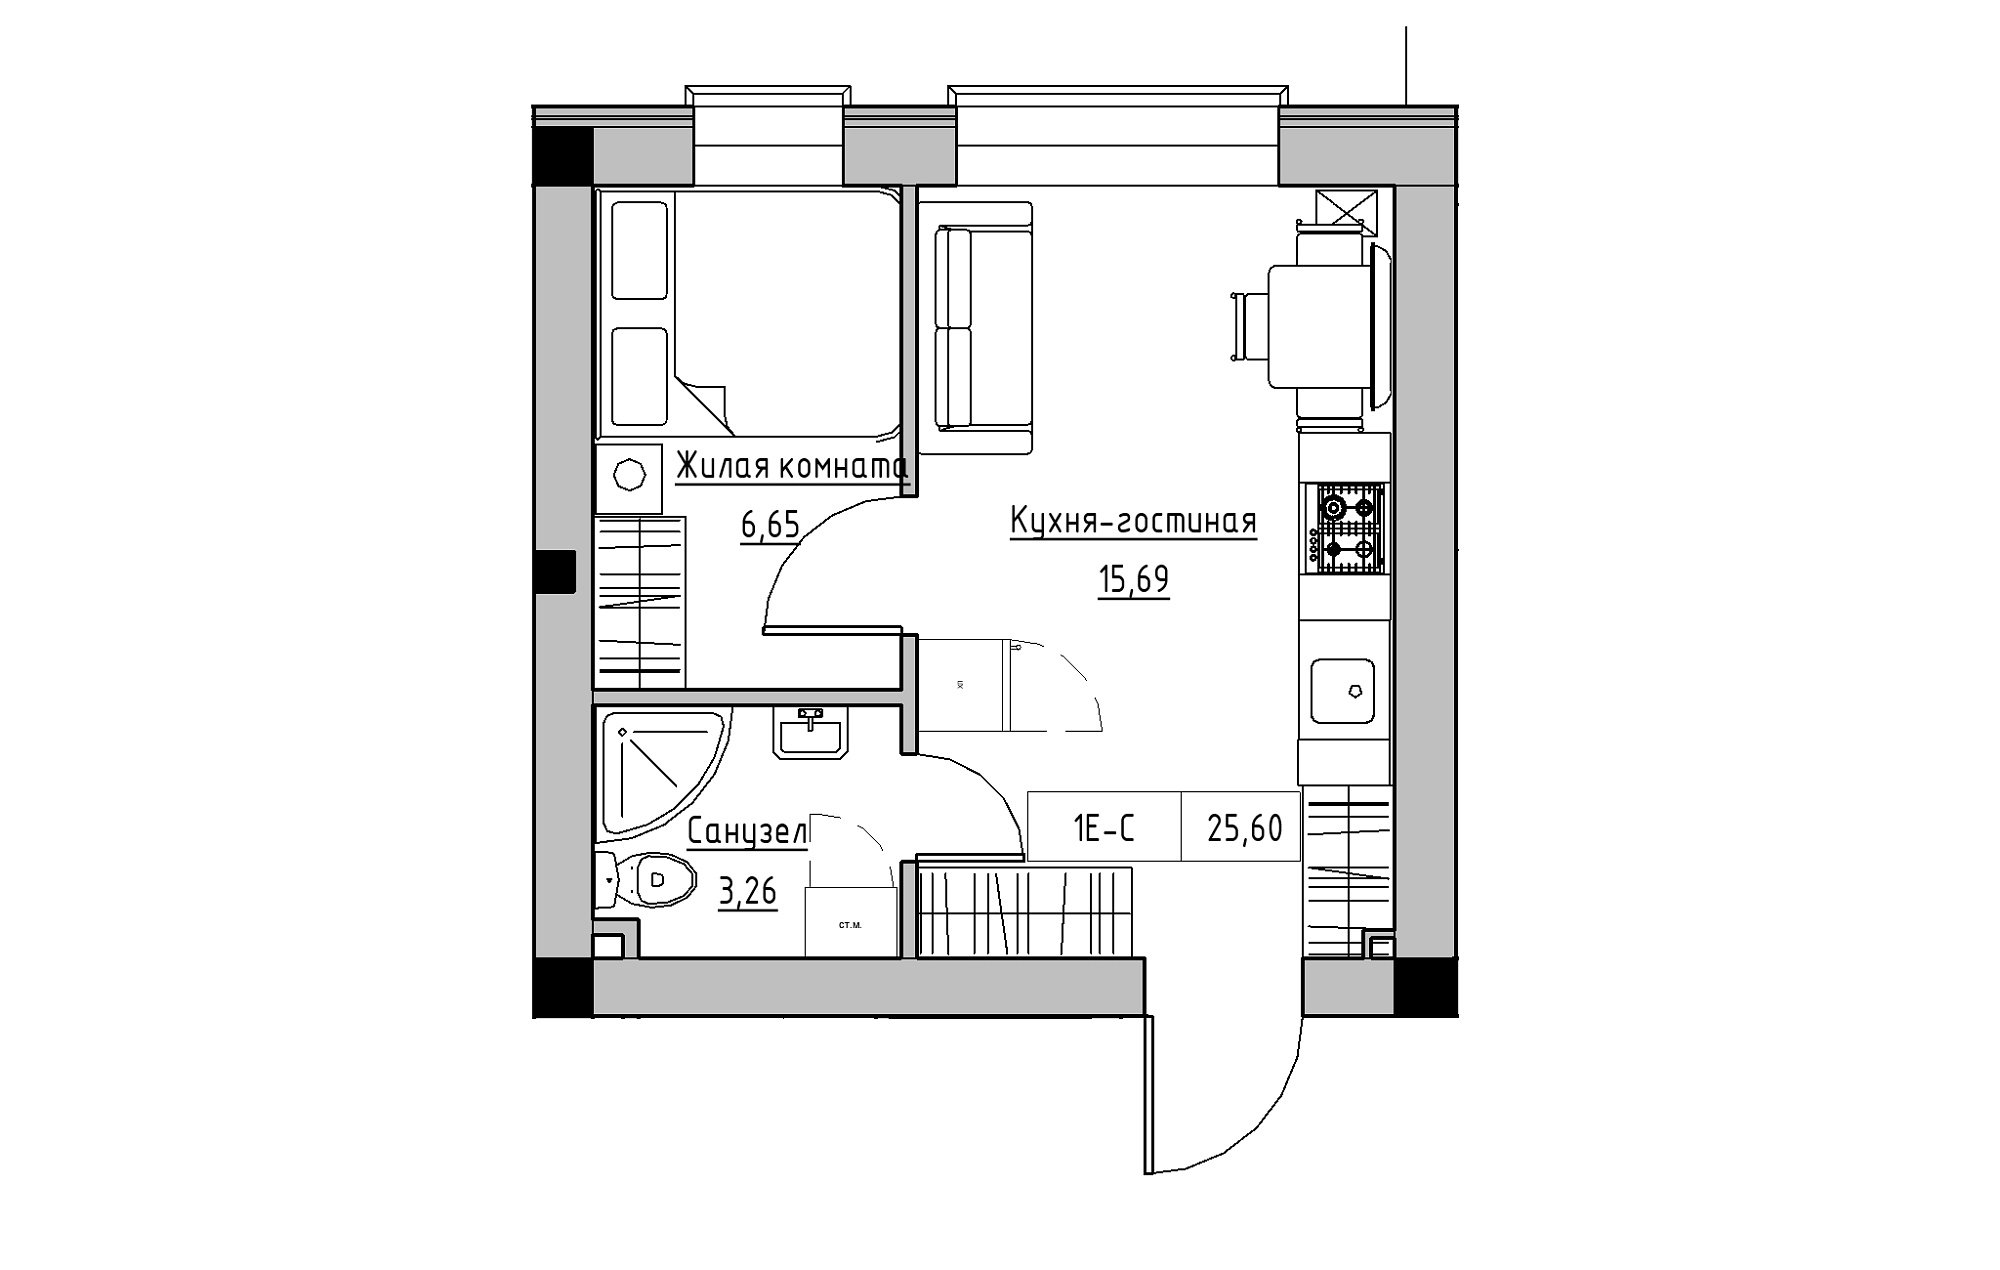 Планировка 1-к квартира площей 25.6м2, KS-018-05/0004.